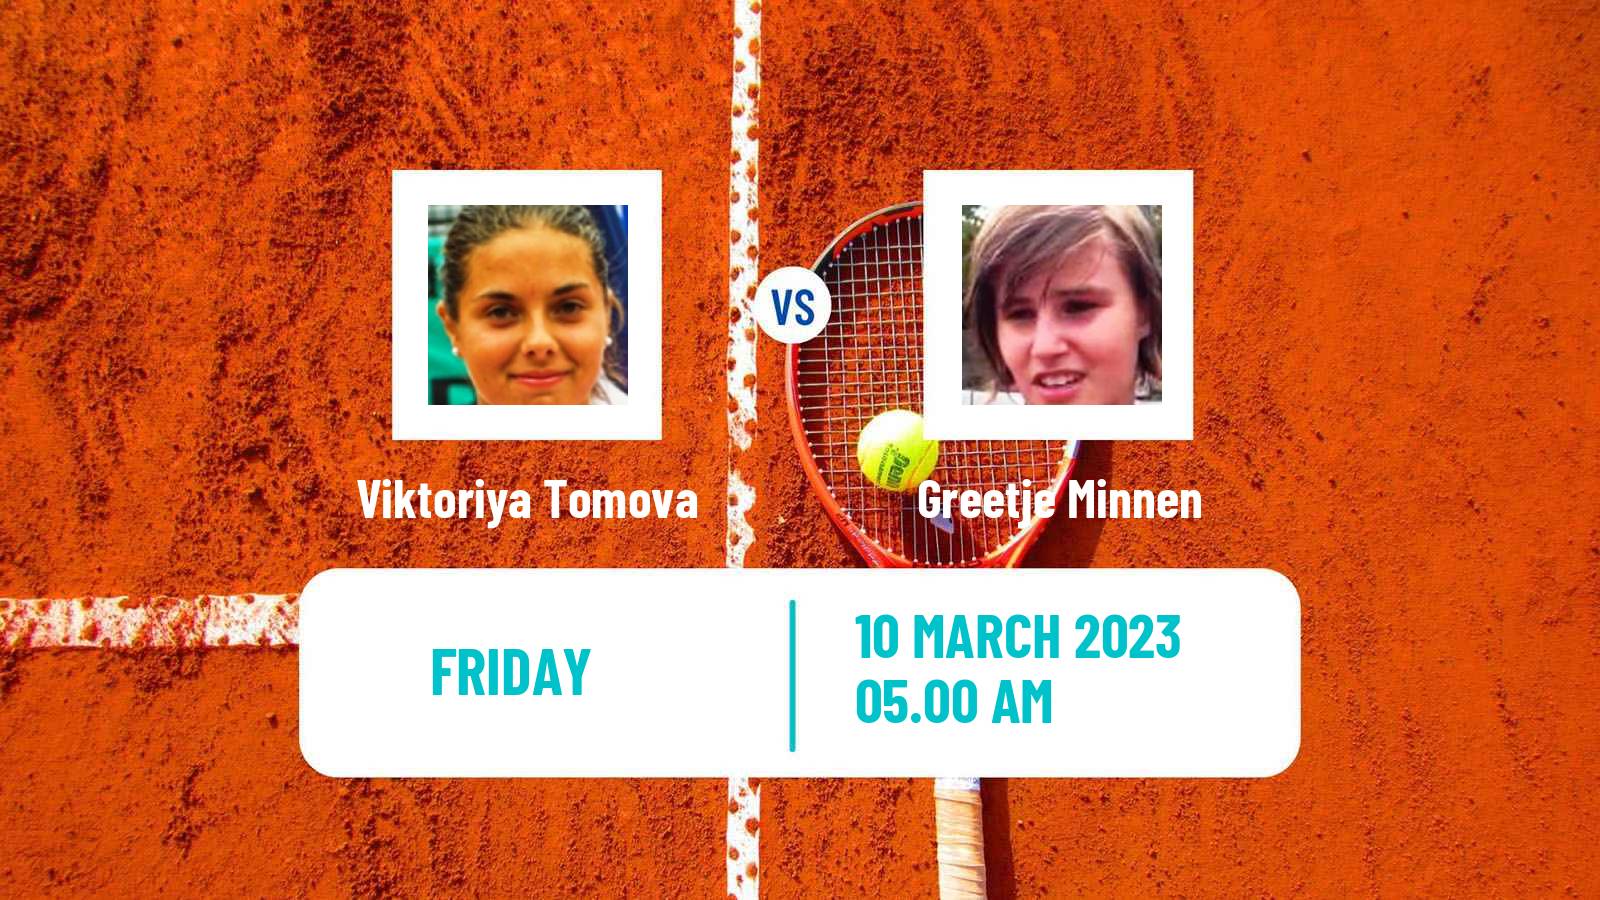 Tennis ITF Tournaments Viktoriya Tomova - Greetje Minnen